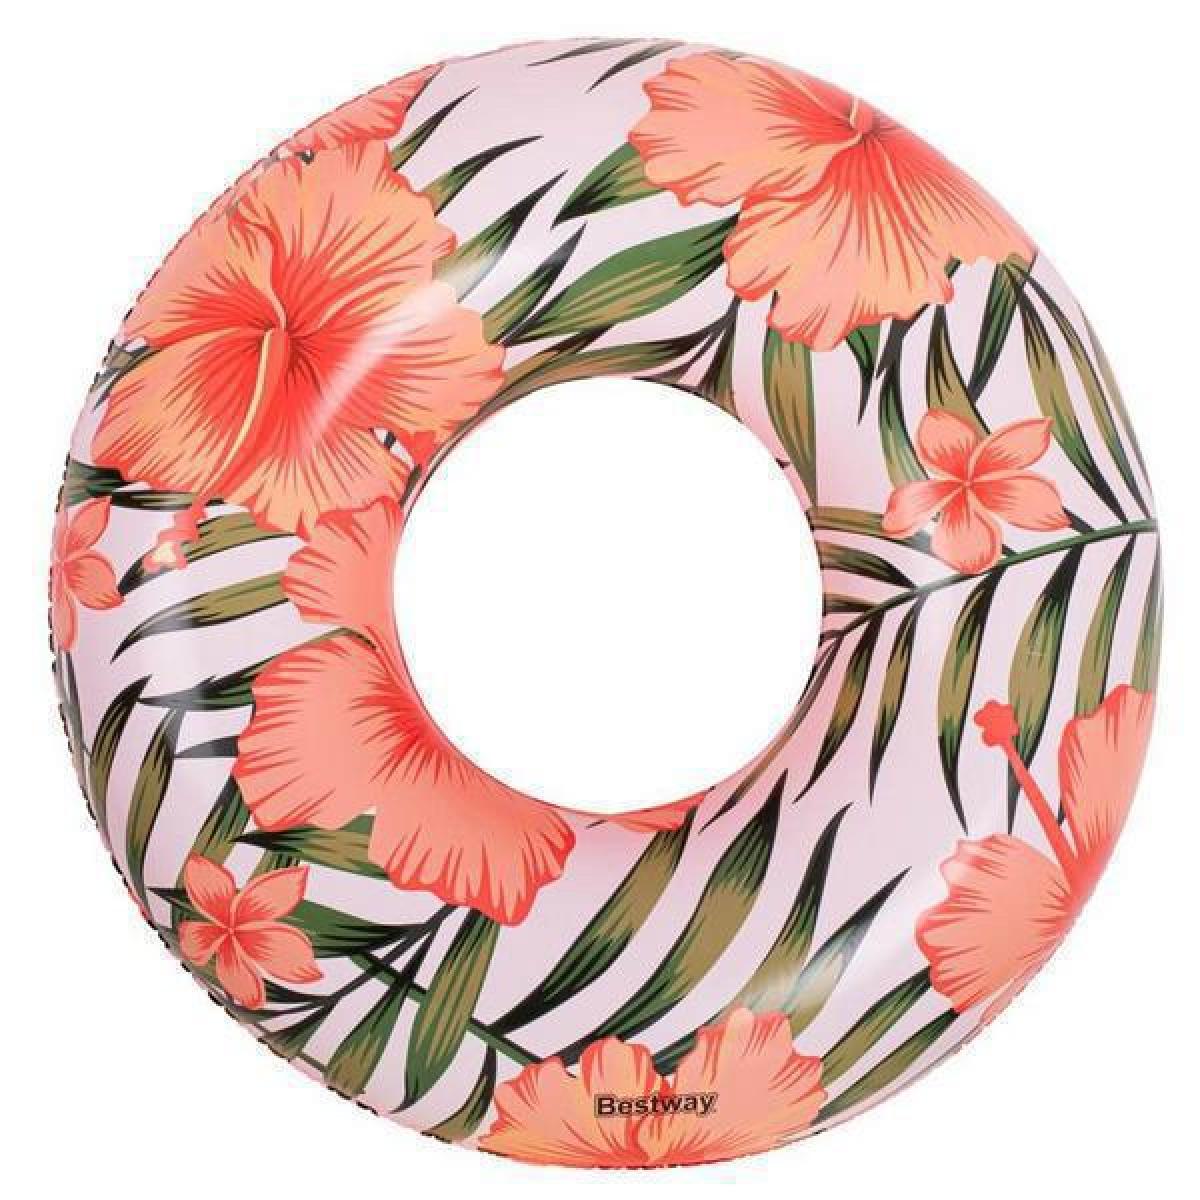 Φουσκωτό Σωσίβιο Bestway 36237 Λουλουδάτο Λευκό Με Ροζ 119cm